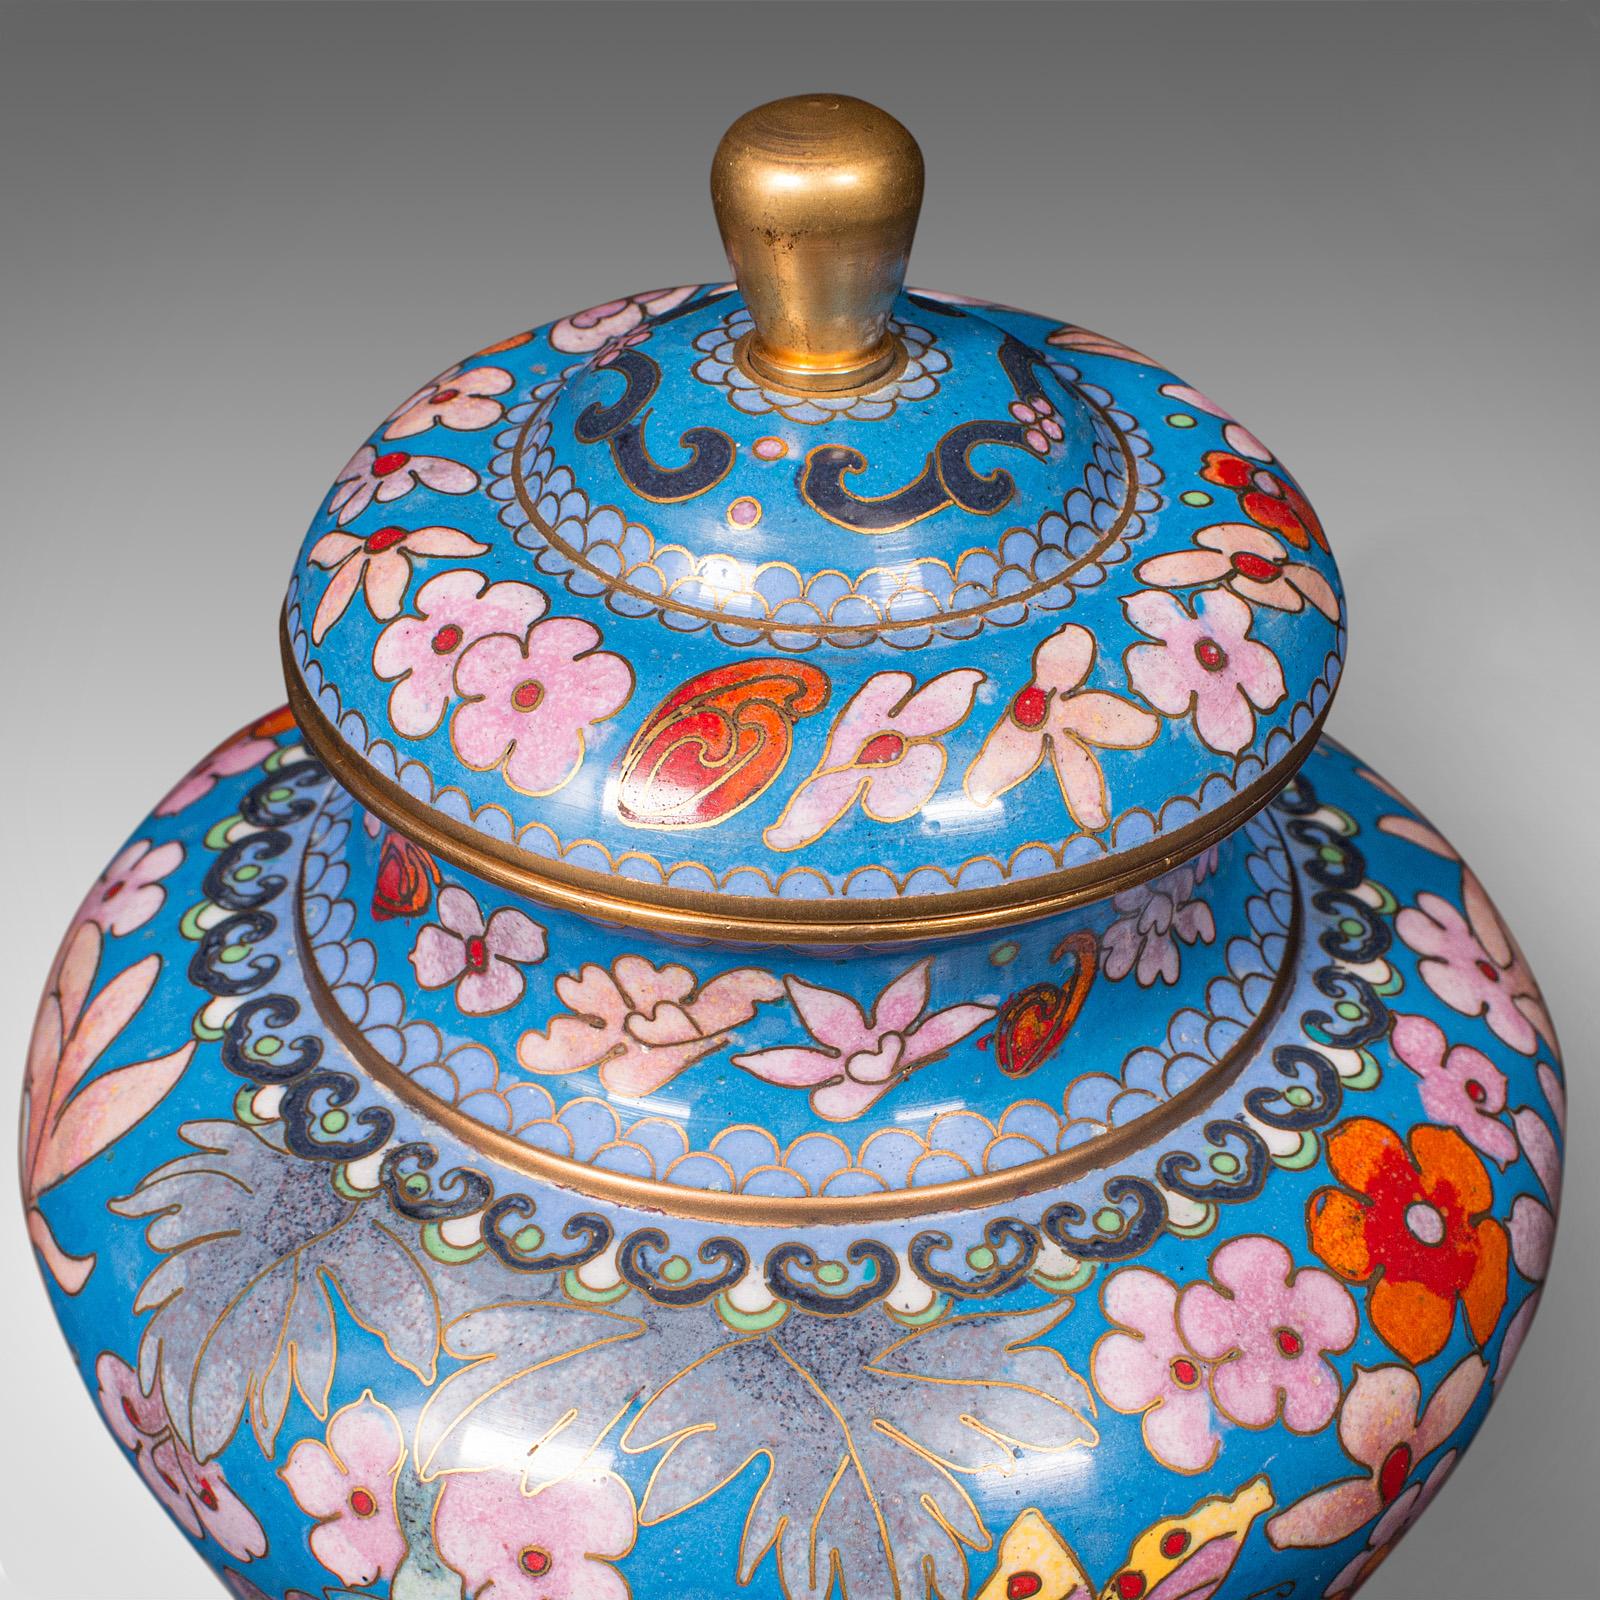 Pair of Antique Cloisonne Spice Jars, English Ceramic, Decorative Pot, Victorian For Sale 6